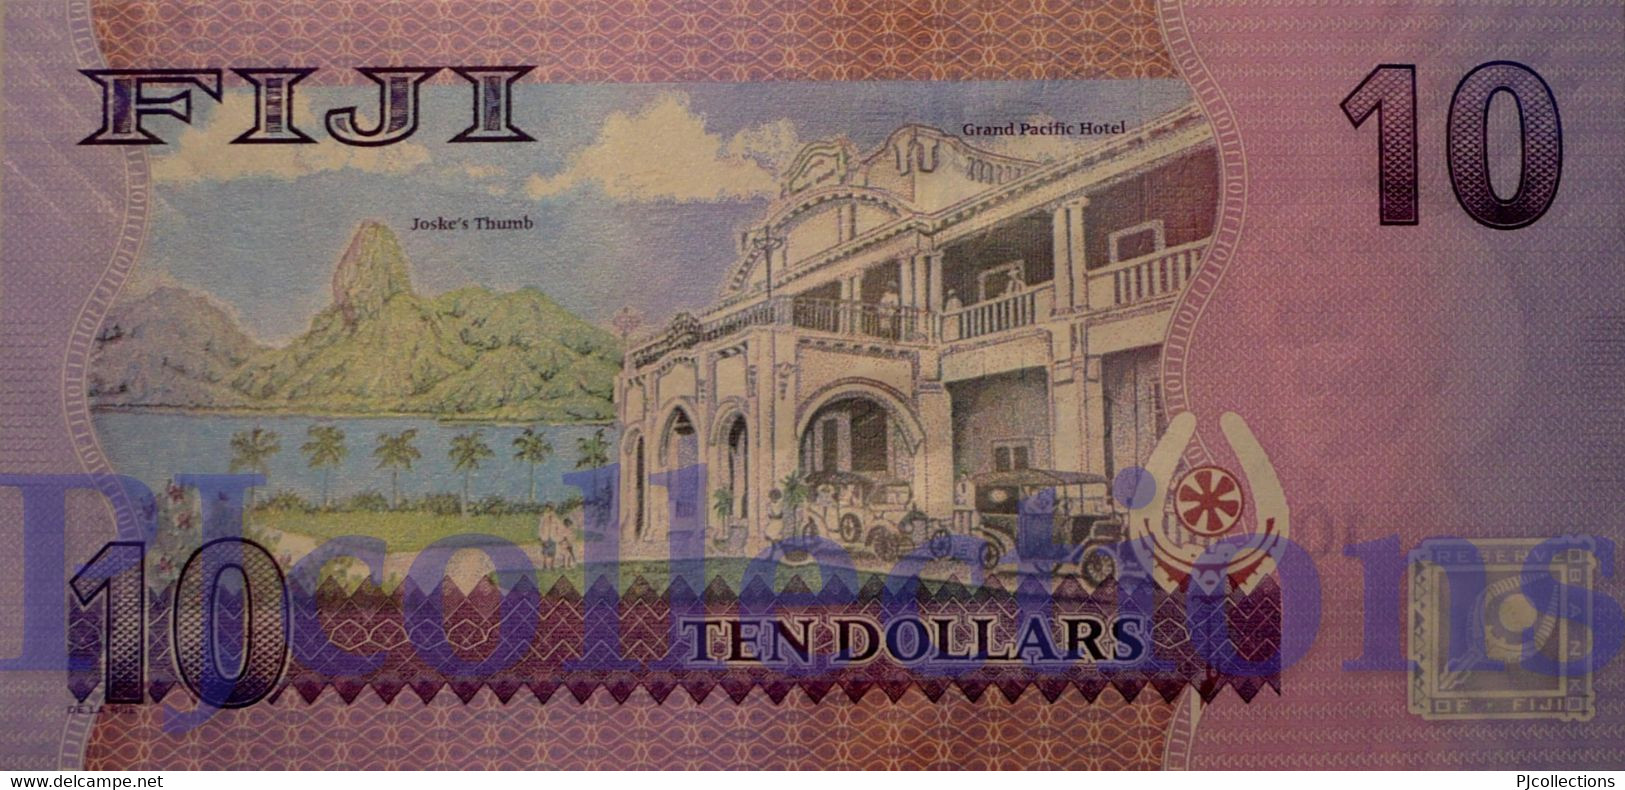 FIJI 10 DOLLARS 2013 PICK 116a UNC PREFIX "FFA" LOW SERIAL NUMBER - Fidschi